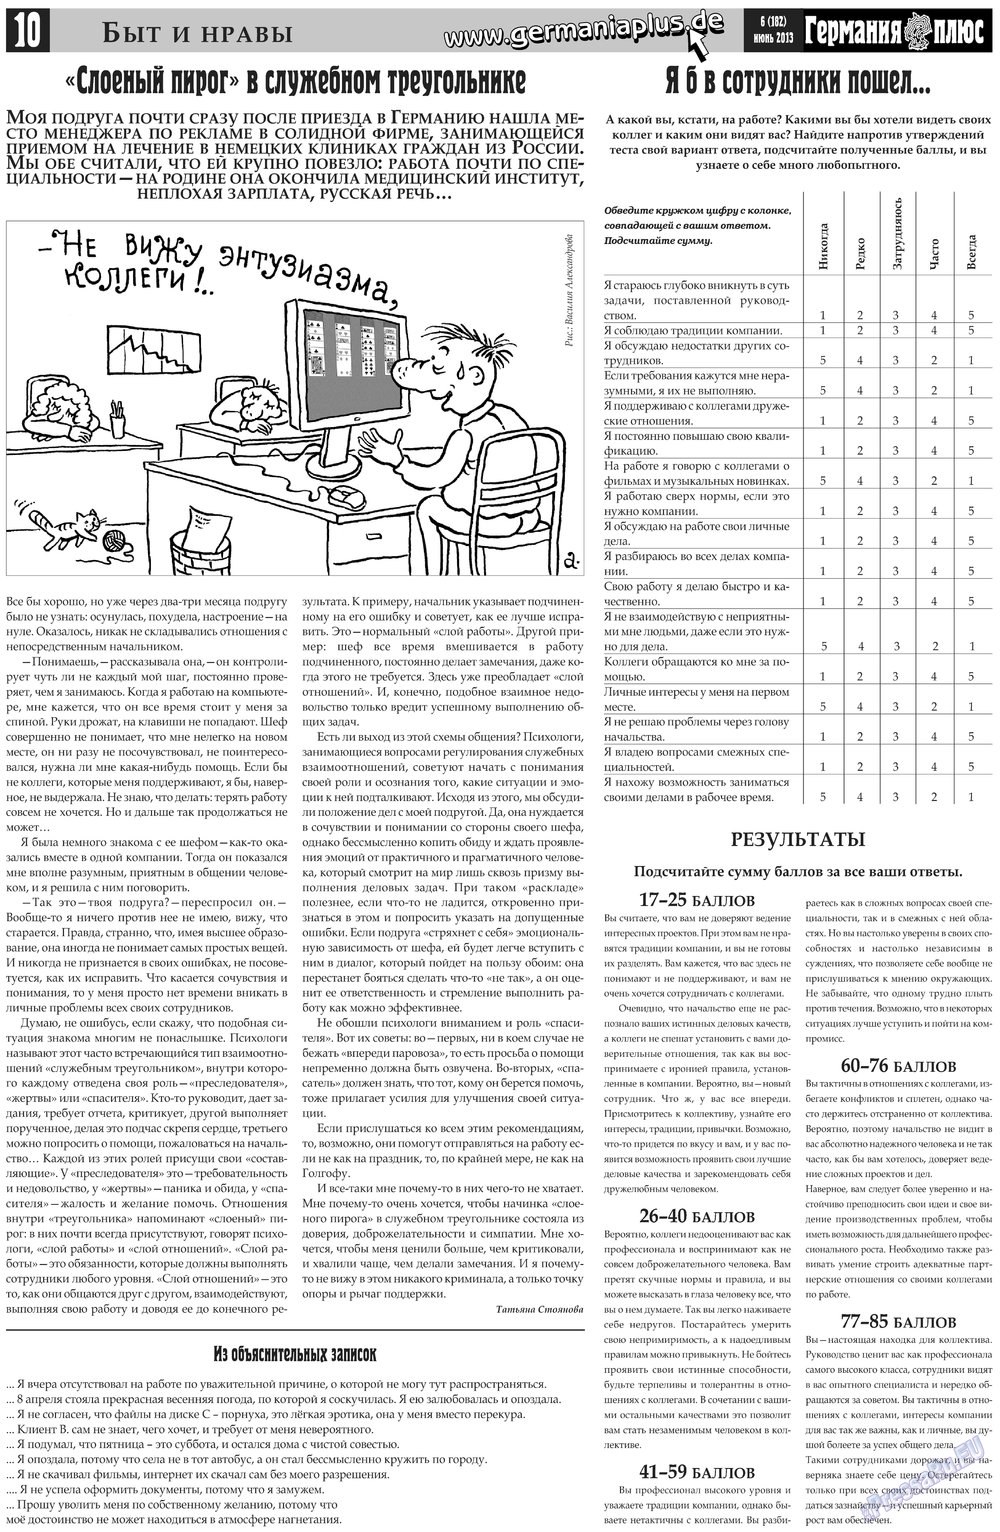 Германия плюс (газета). 2013 год, номер 6, стр. 10